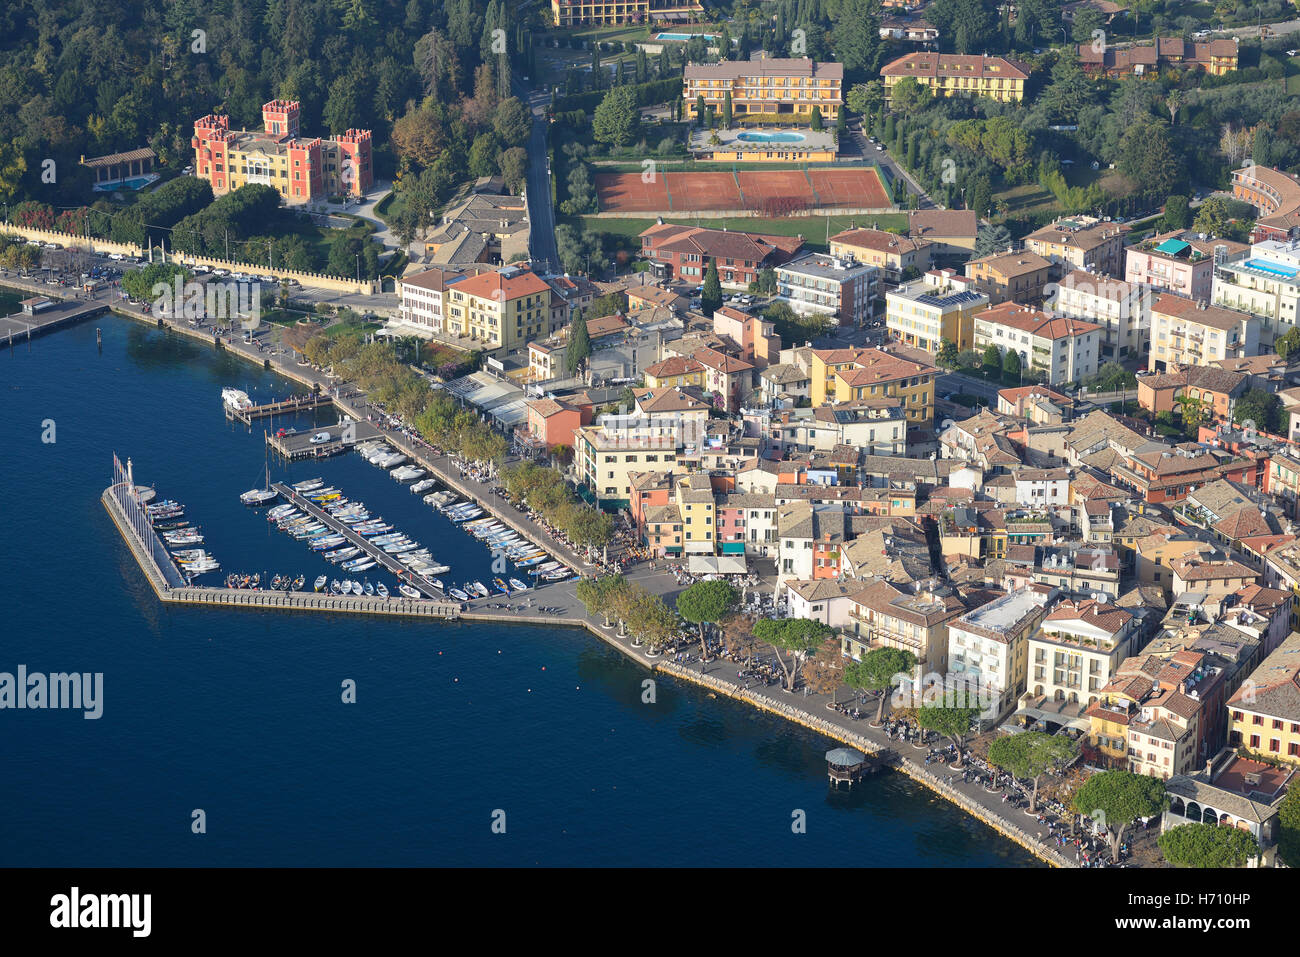 LUFTAUFNAHME. Historisches Zentrum und Yachthafen von Garda am östlichen Ufer des Gardasees. Provinz Verona, Venetien, Italien. Stockfoto